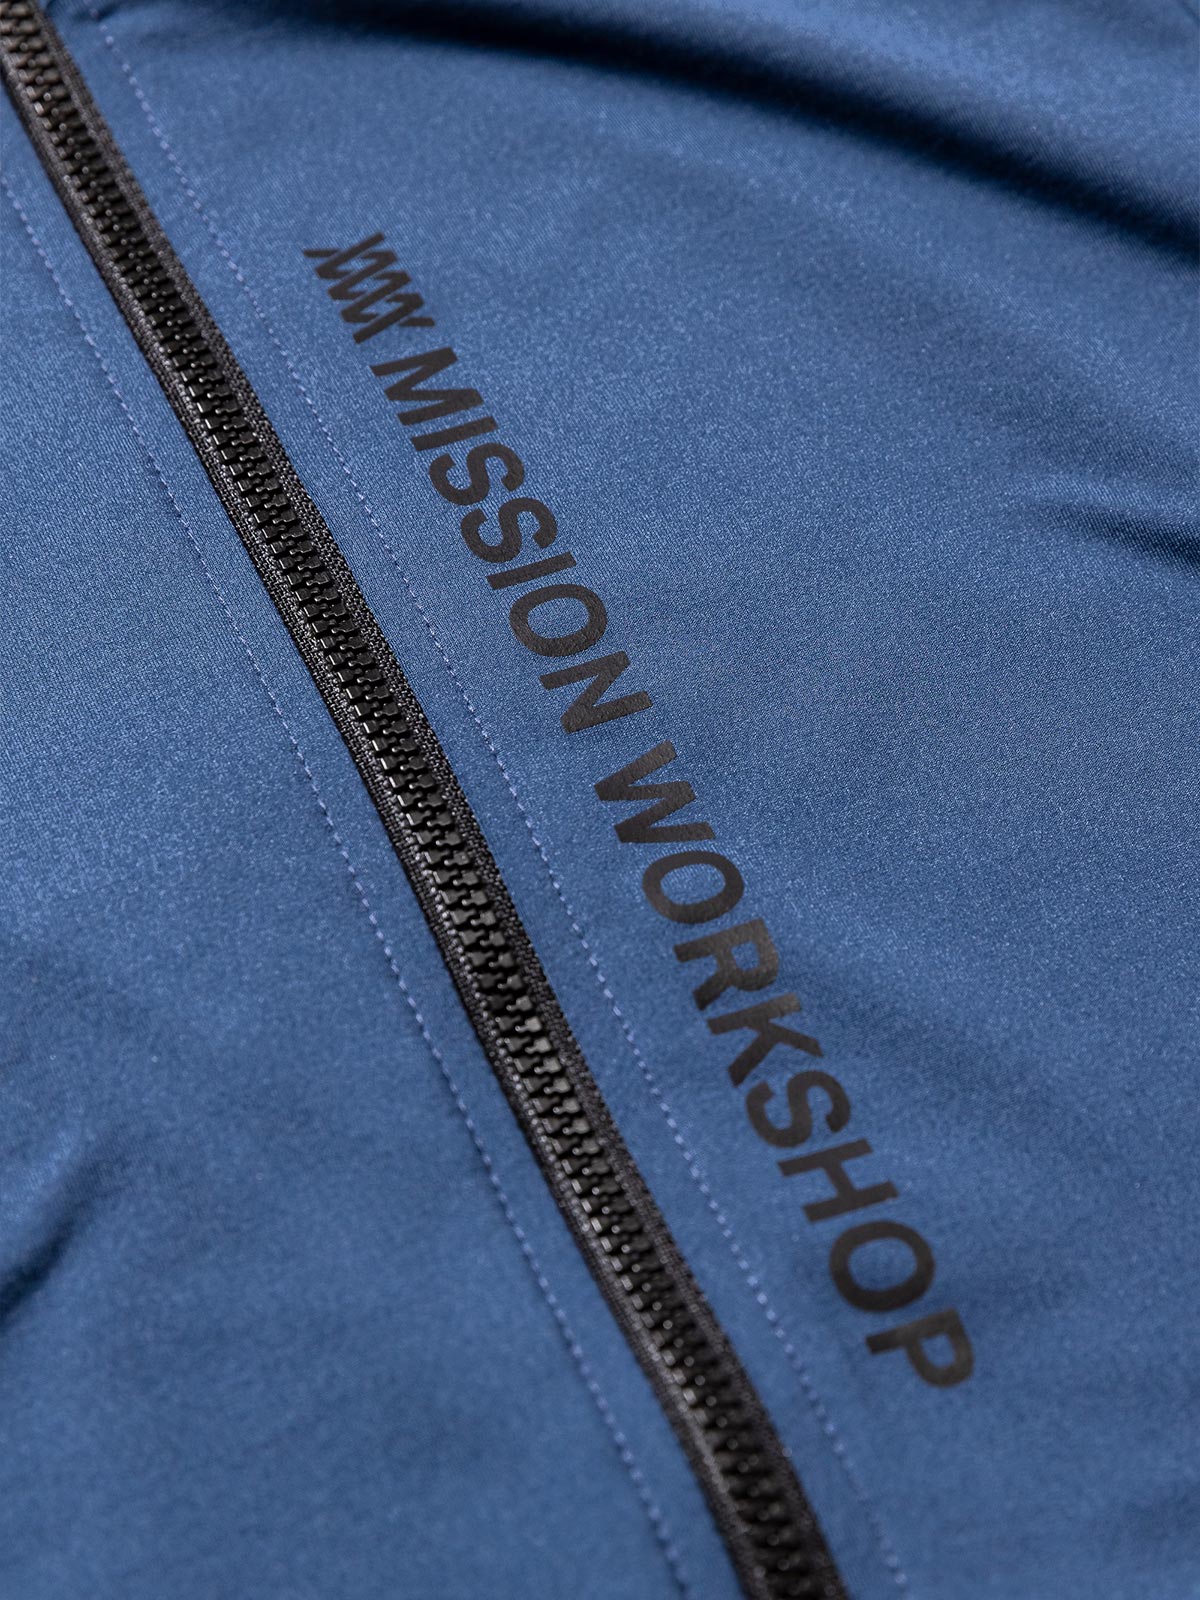 Mission Pro Jersey : LS Women's von Mission Workshop - Wetterfeste Taschen & Technische Bekleidung - San Francisco & Los Angeles - Für die Ewigkeit gebaut - Garantiert